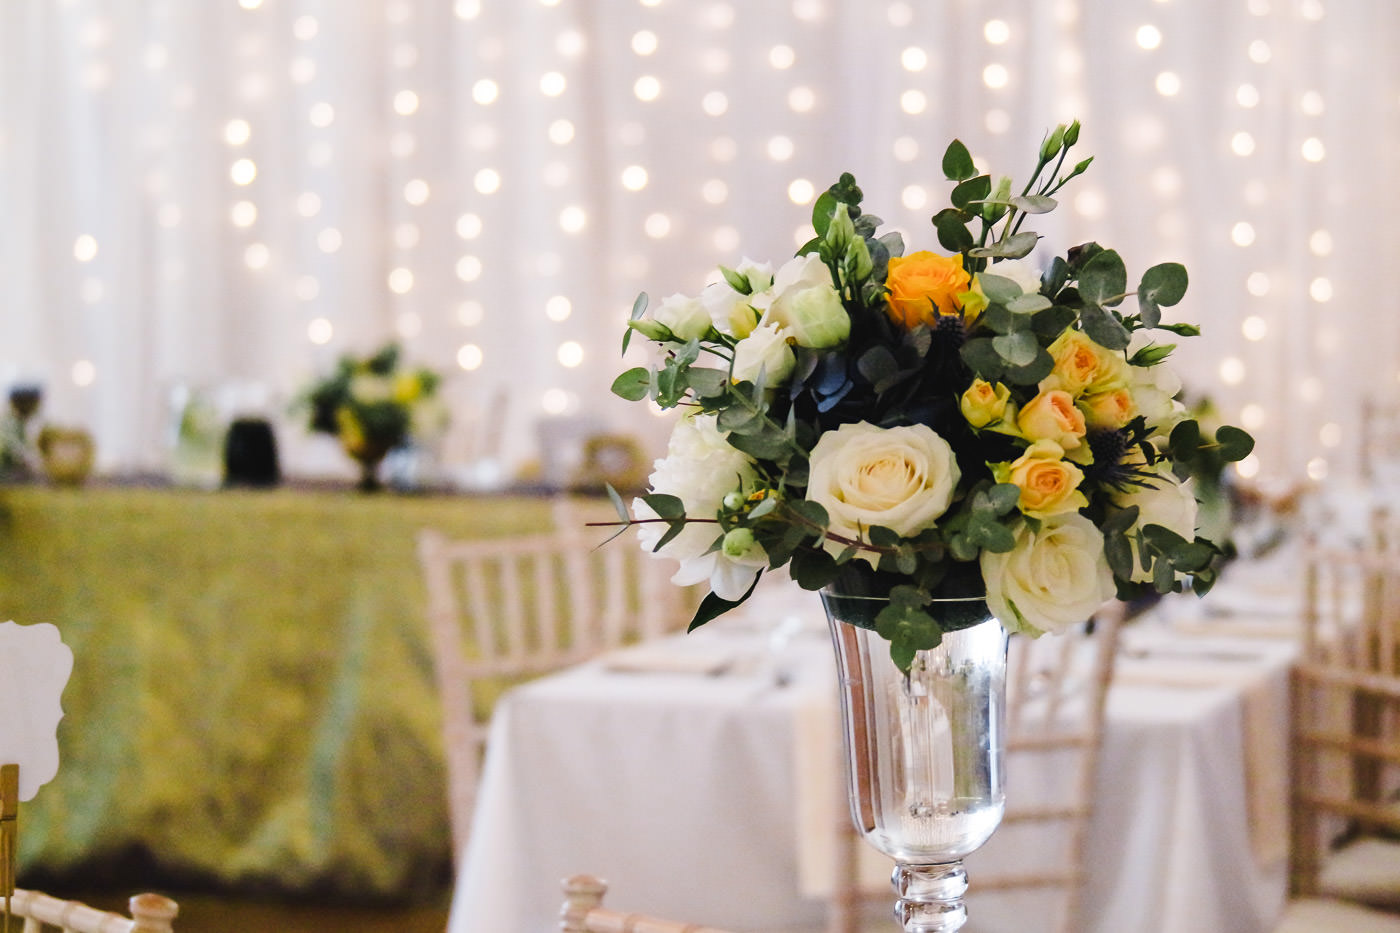 Susan&Sis decor svadobna vyzdoba - dekorovanie- luxusna zlato modra svadba - biele, zlte, modre kvety, zlate obrusy, svadba v bielom stane